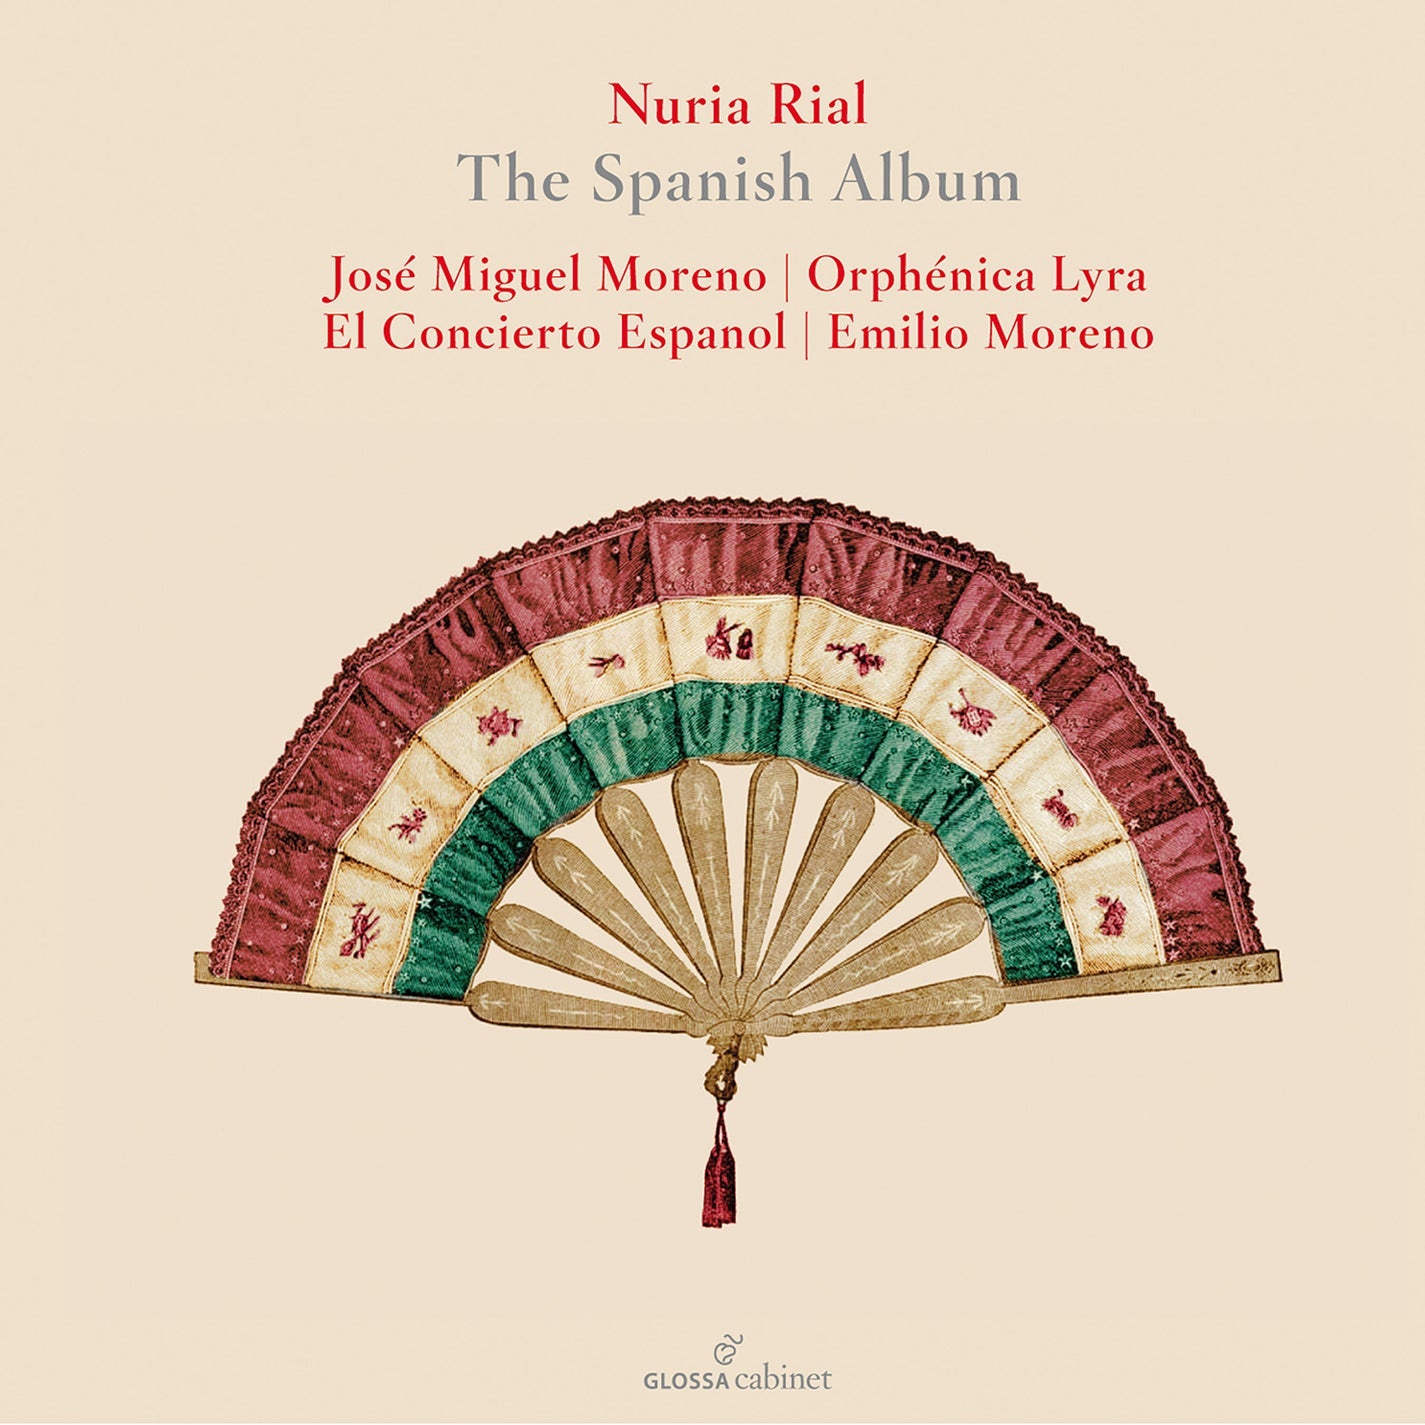 The Spanish Album / Nuria Rial [2 CDs]